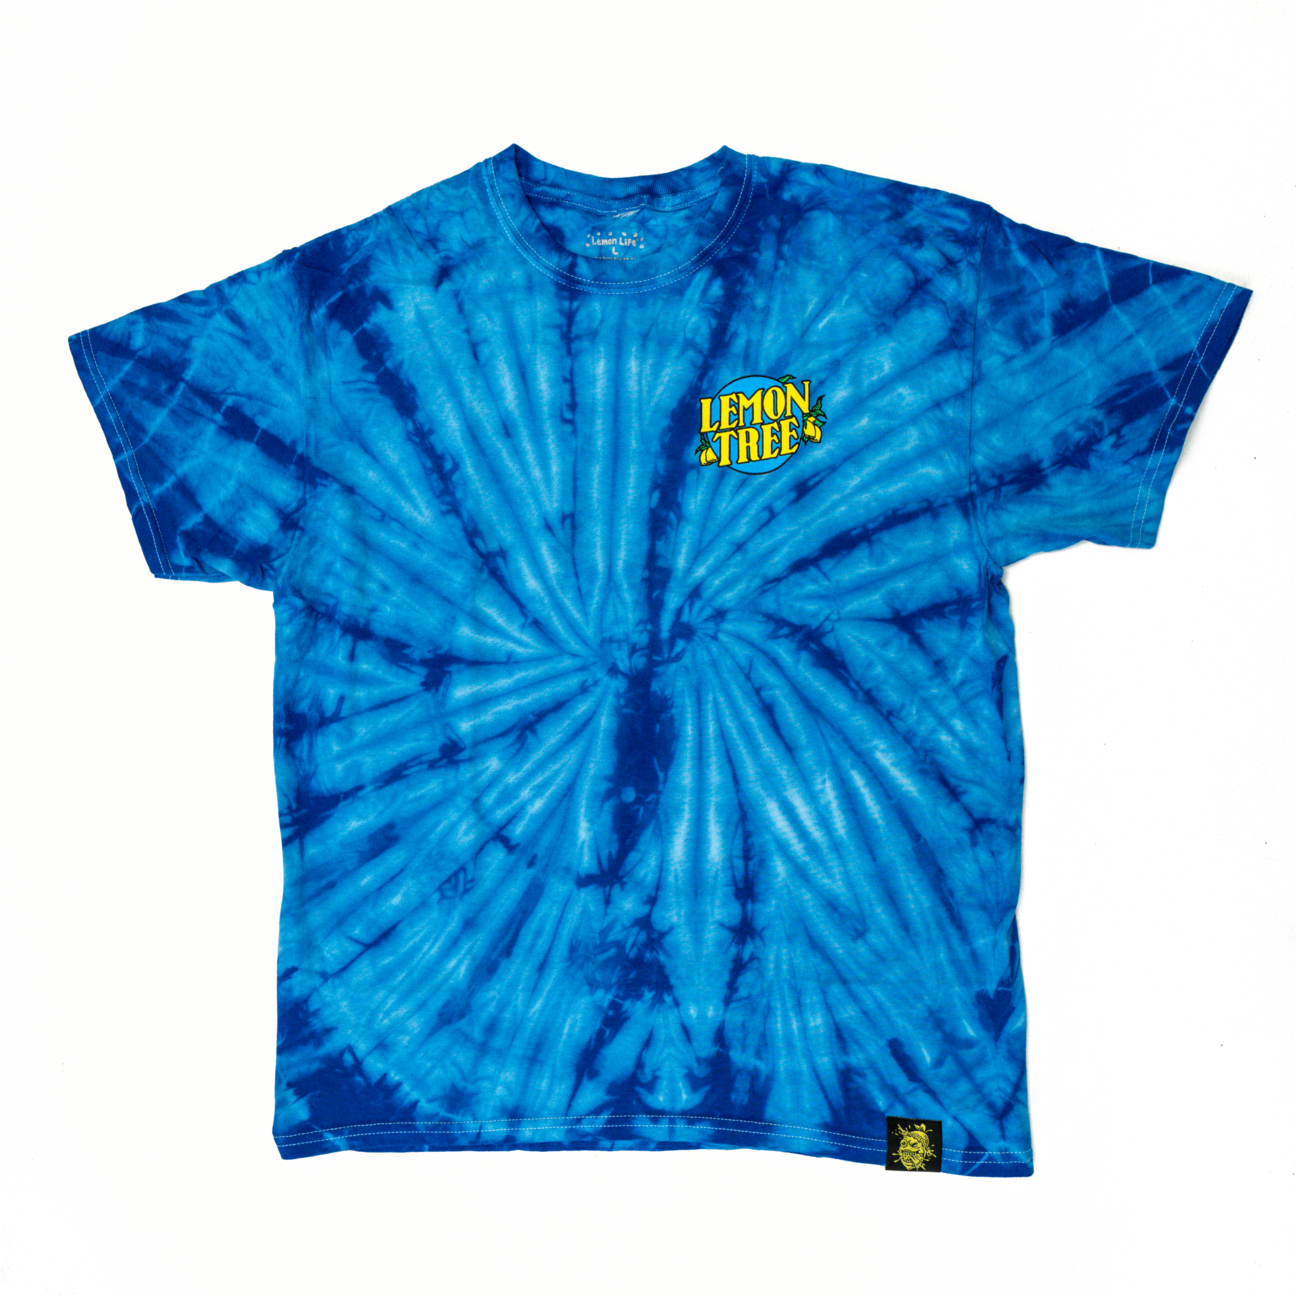 Country Time Lemon Tree T-Shirt (Tie Dye Blue)